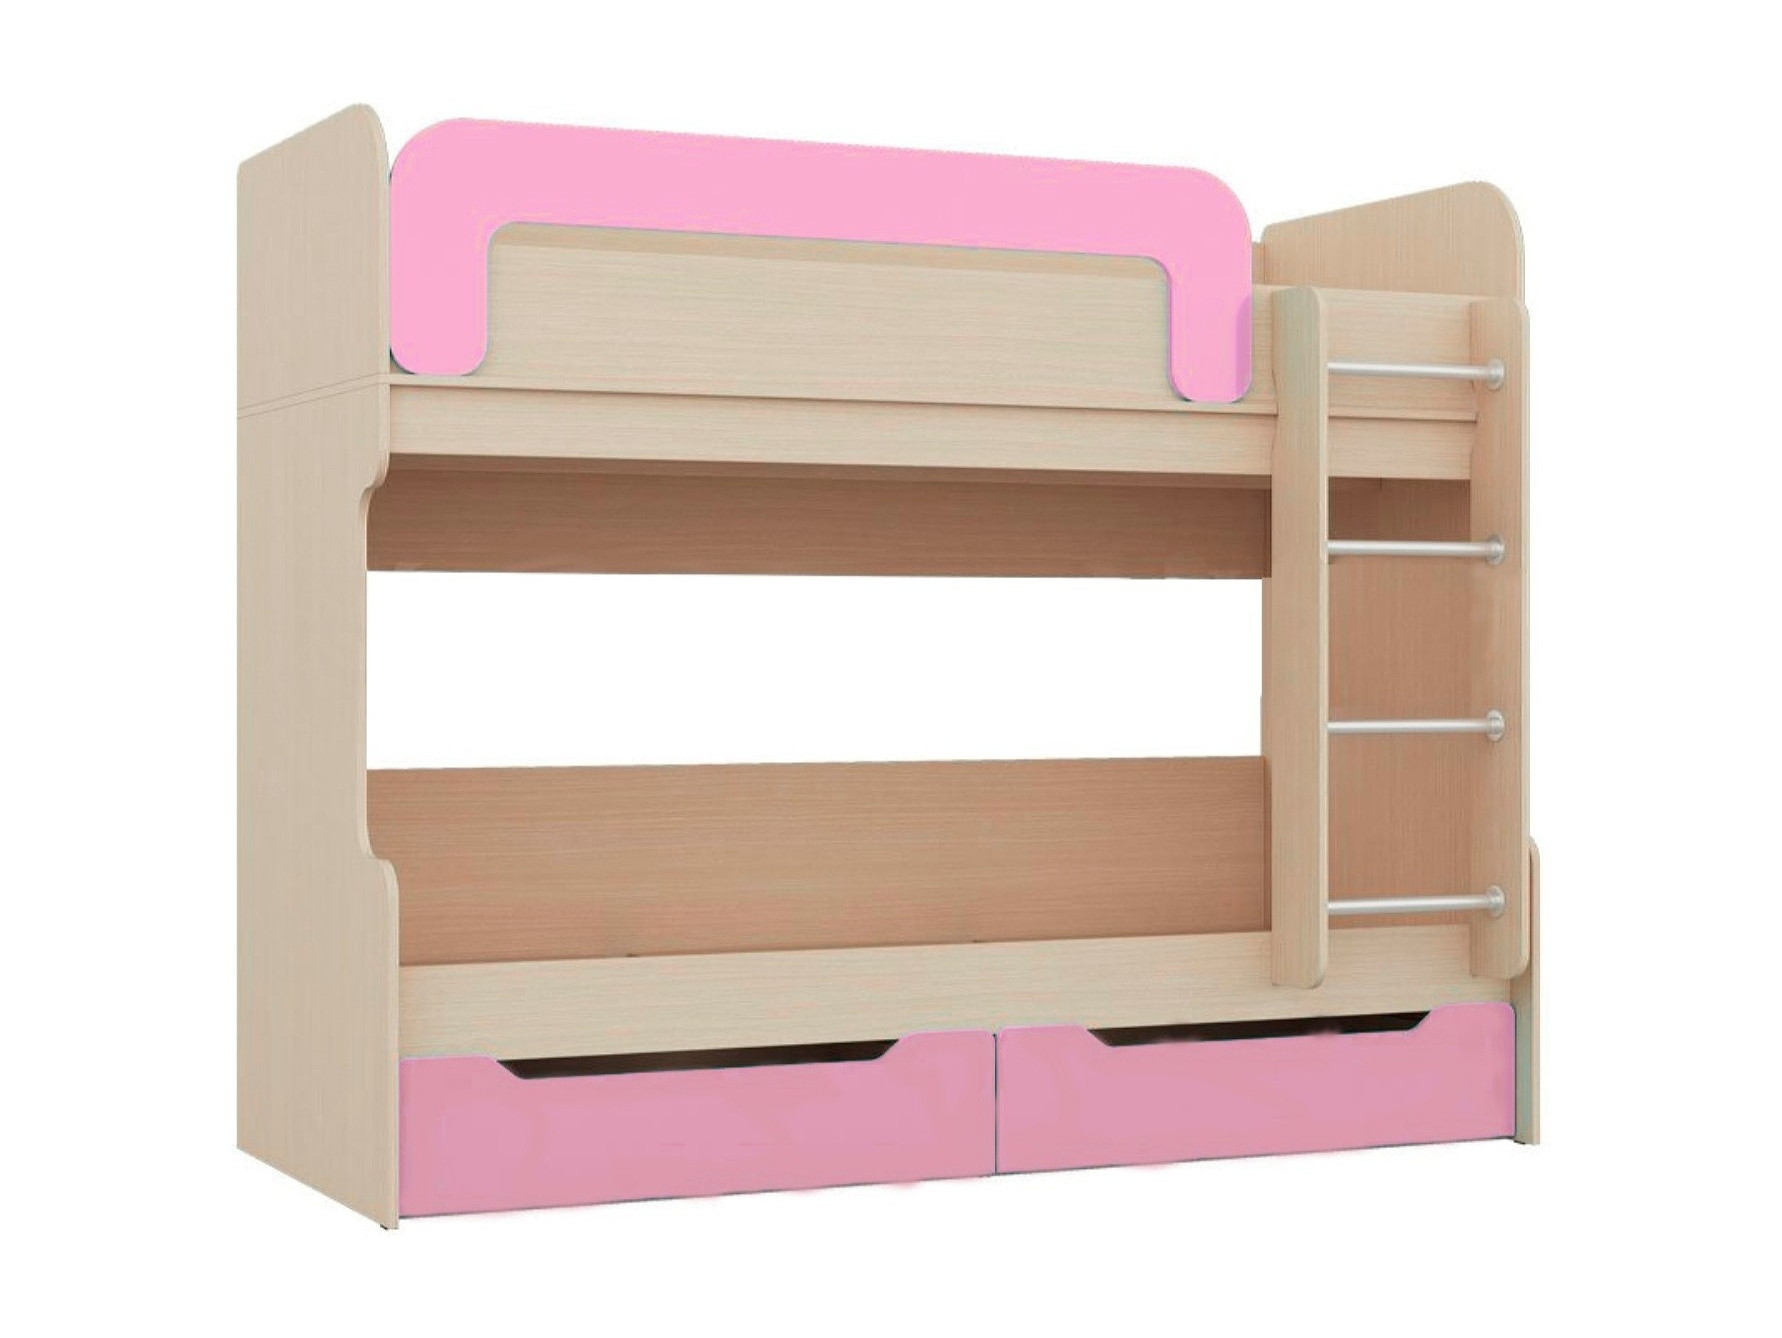 Юниор-1 Двухъярусная кровать 80, розовый (Розовый металлик, Дуб белёный) Розовый металлик, ЛДСП двухъярусная кровать юниор 6 дуб молочный голубой бежевый